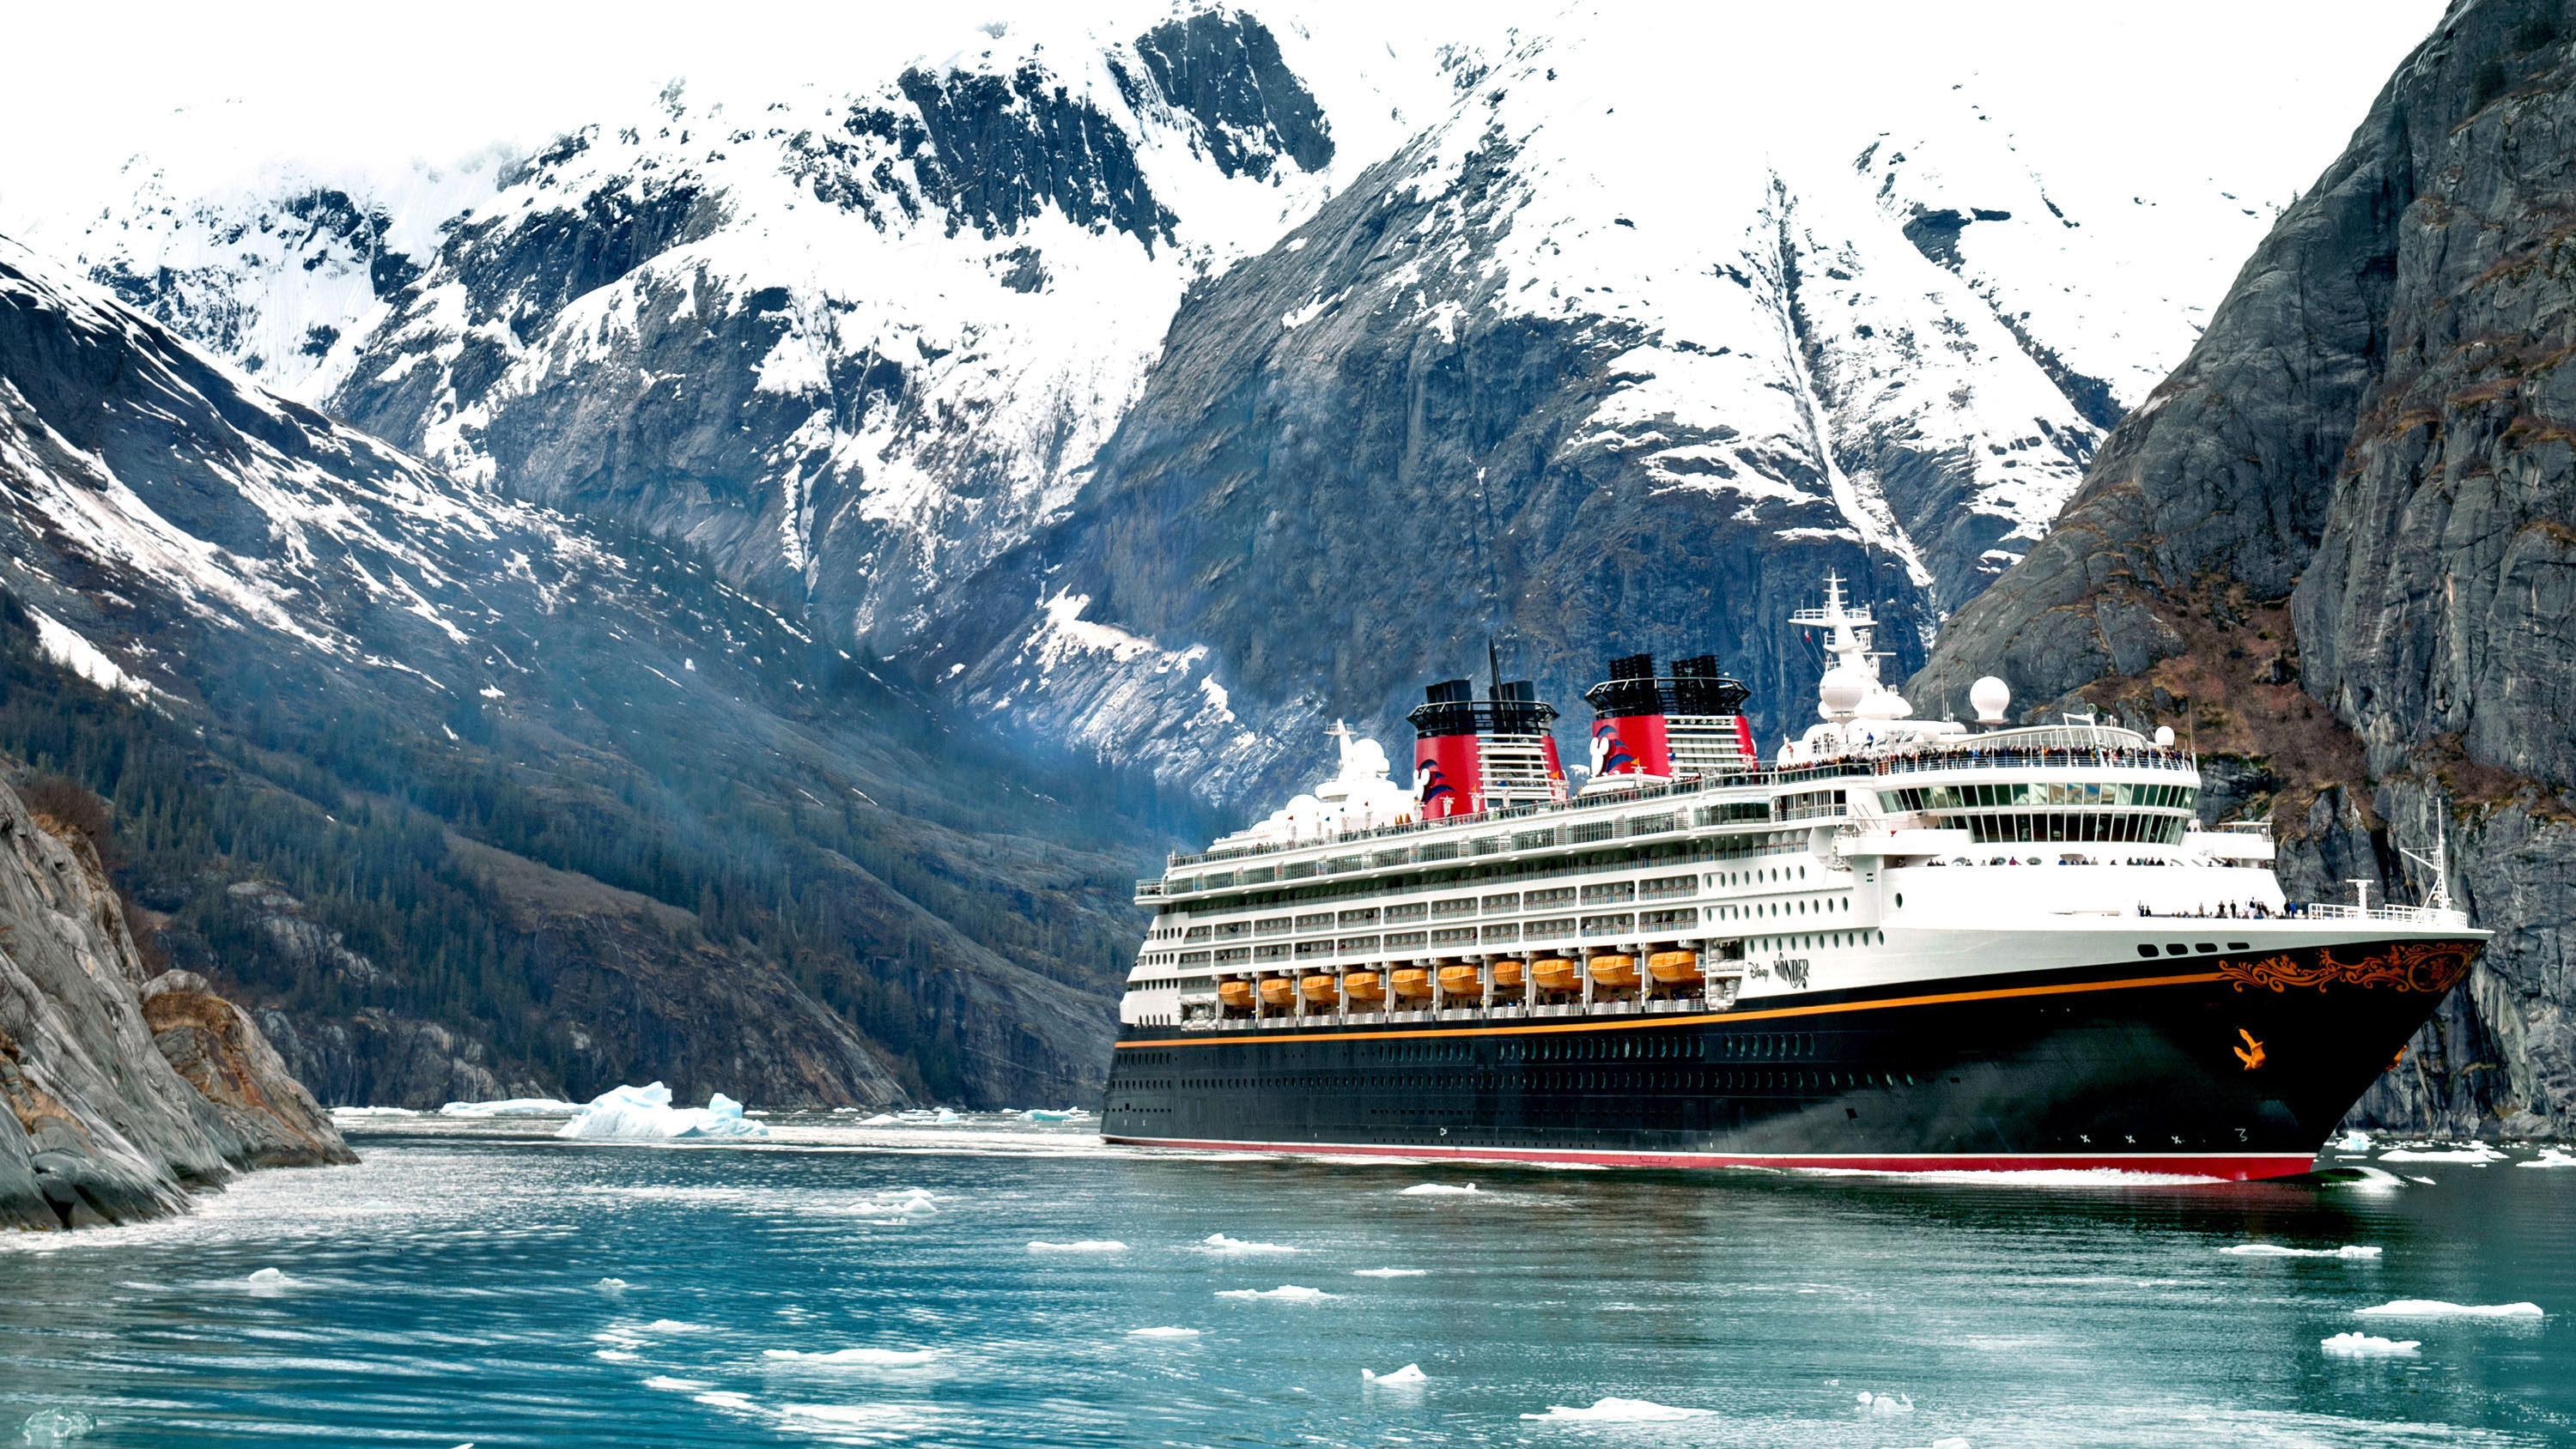 La temporada de cruceros Canadá y Alaska 2020 se cancela - Celestyal Cruises suspensión de operaciones hasta 30 julio ✈️ Foro Cruceros